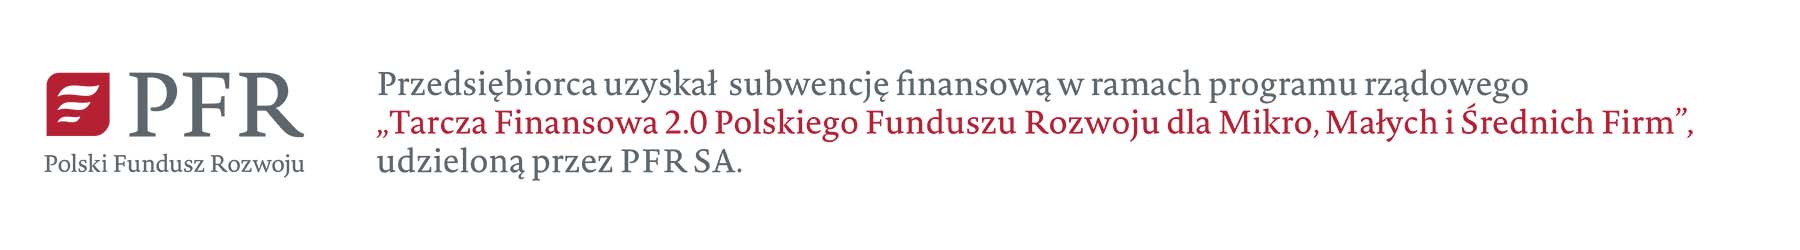 Polski fundusz rowoju informacja o dofinansowaniu